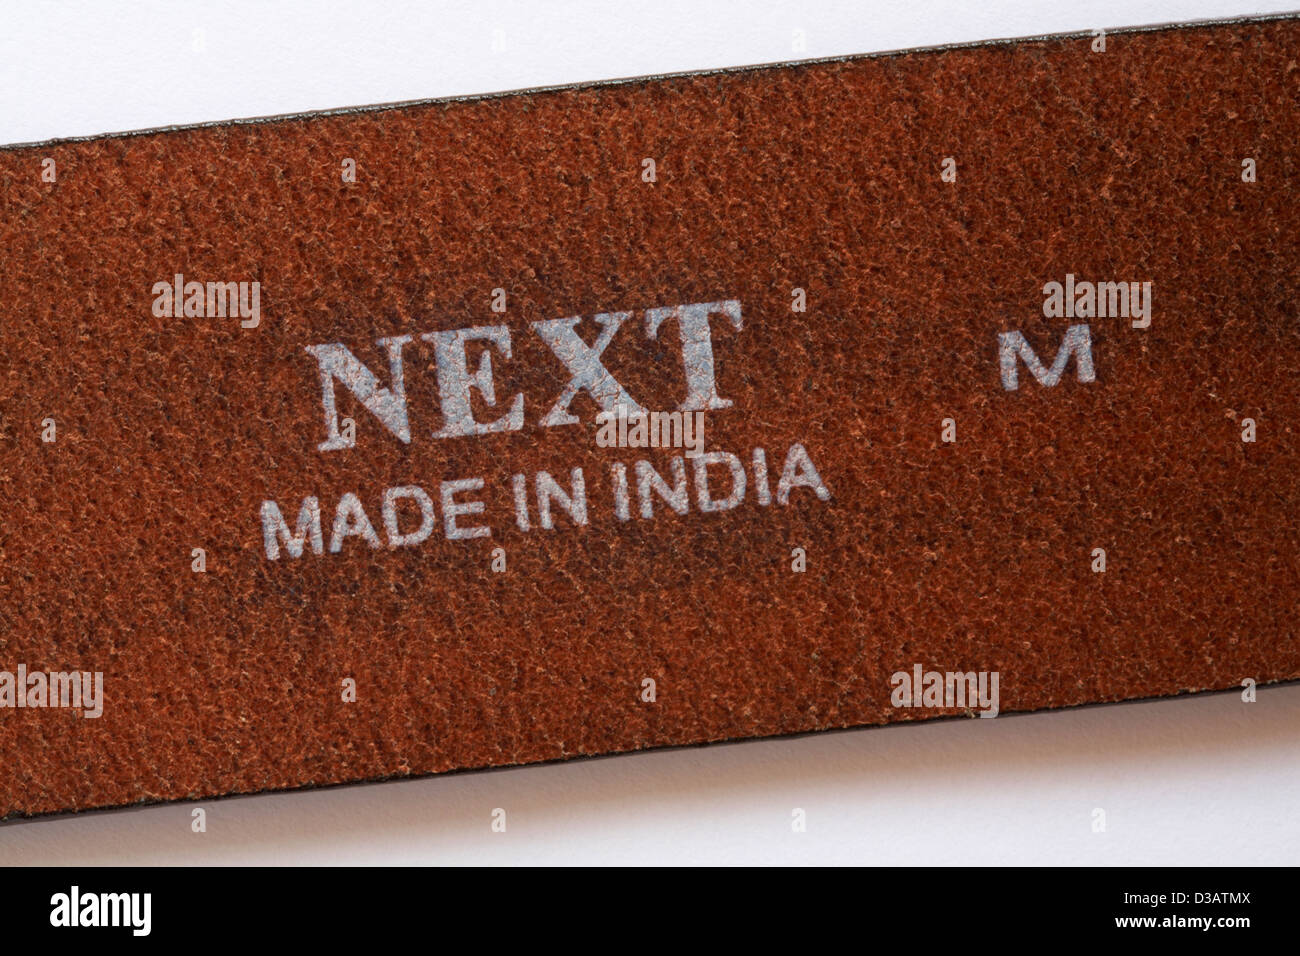 Détail sur la ceinture de cuir made in India Banque D'Images